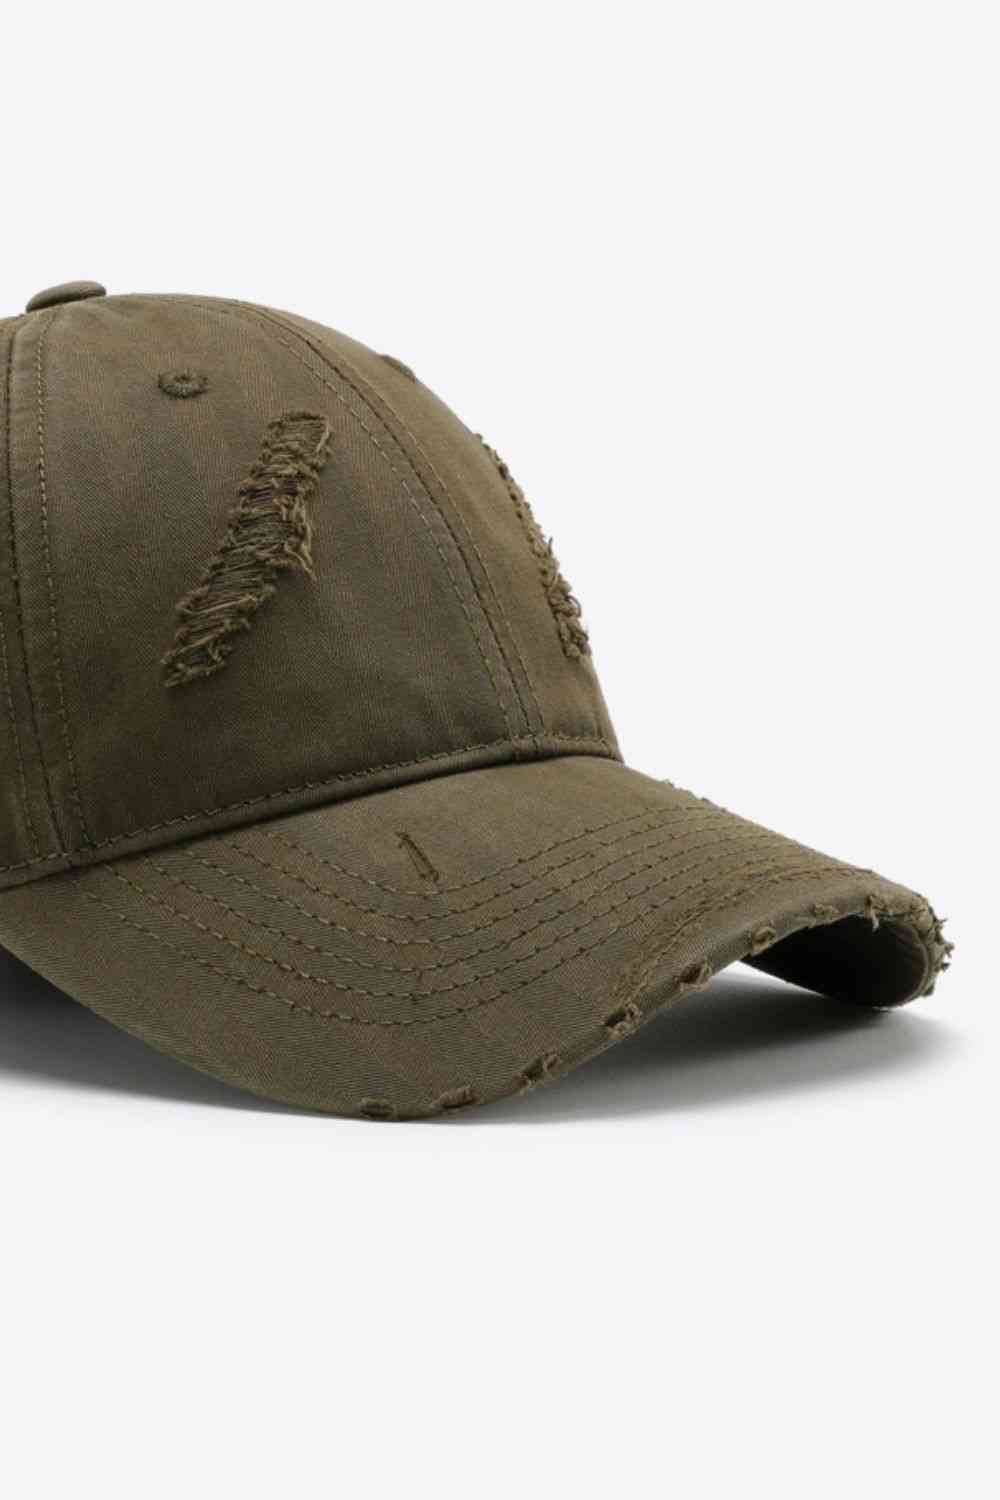 Distressed Adjustable Baseball Cap - Rose Gold Co. Shop